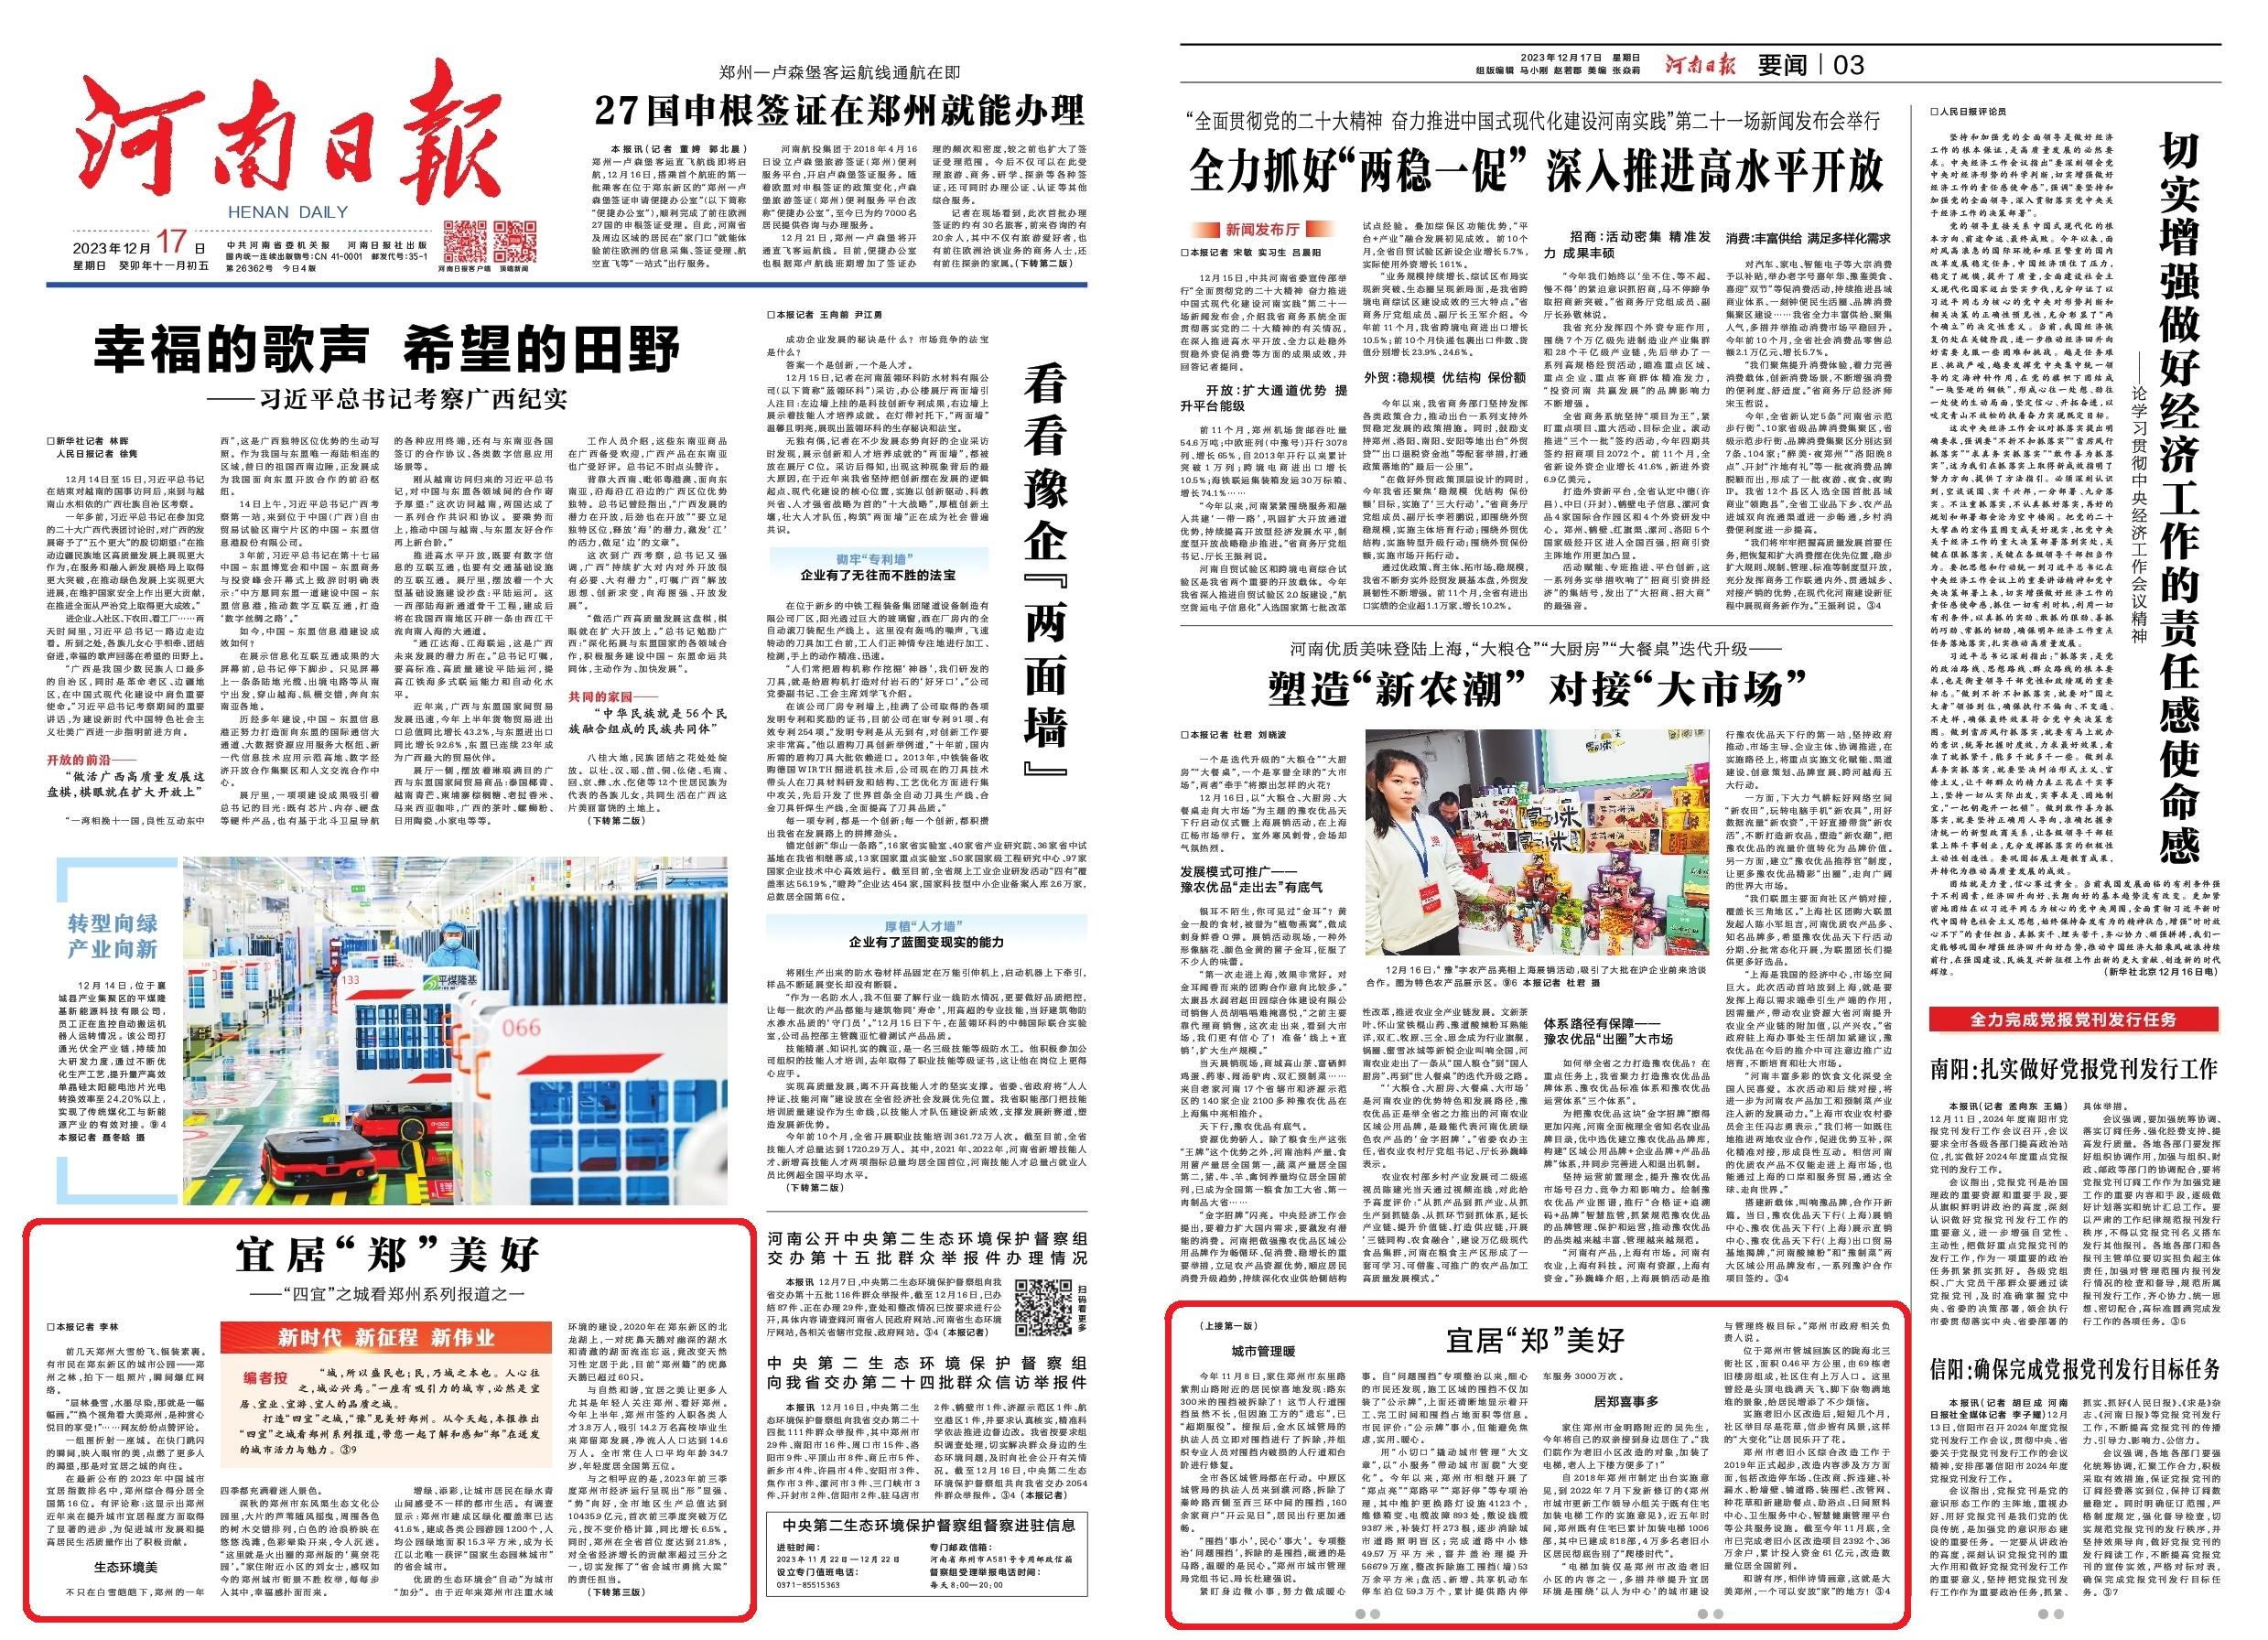 今日河南日报一版推出“四宜之城”重大系列报道首篇——《宜居“郑”美好》！去看一座城的“图意”与“心语”～